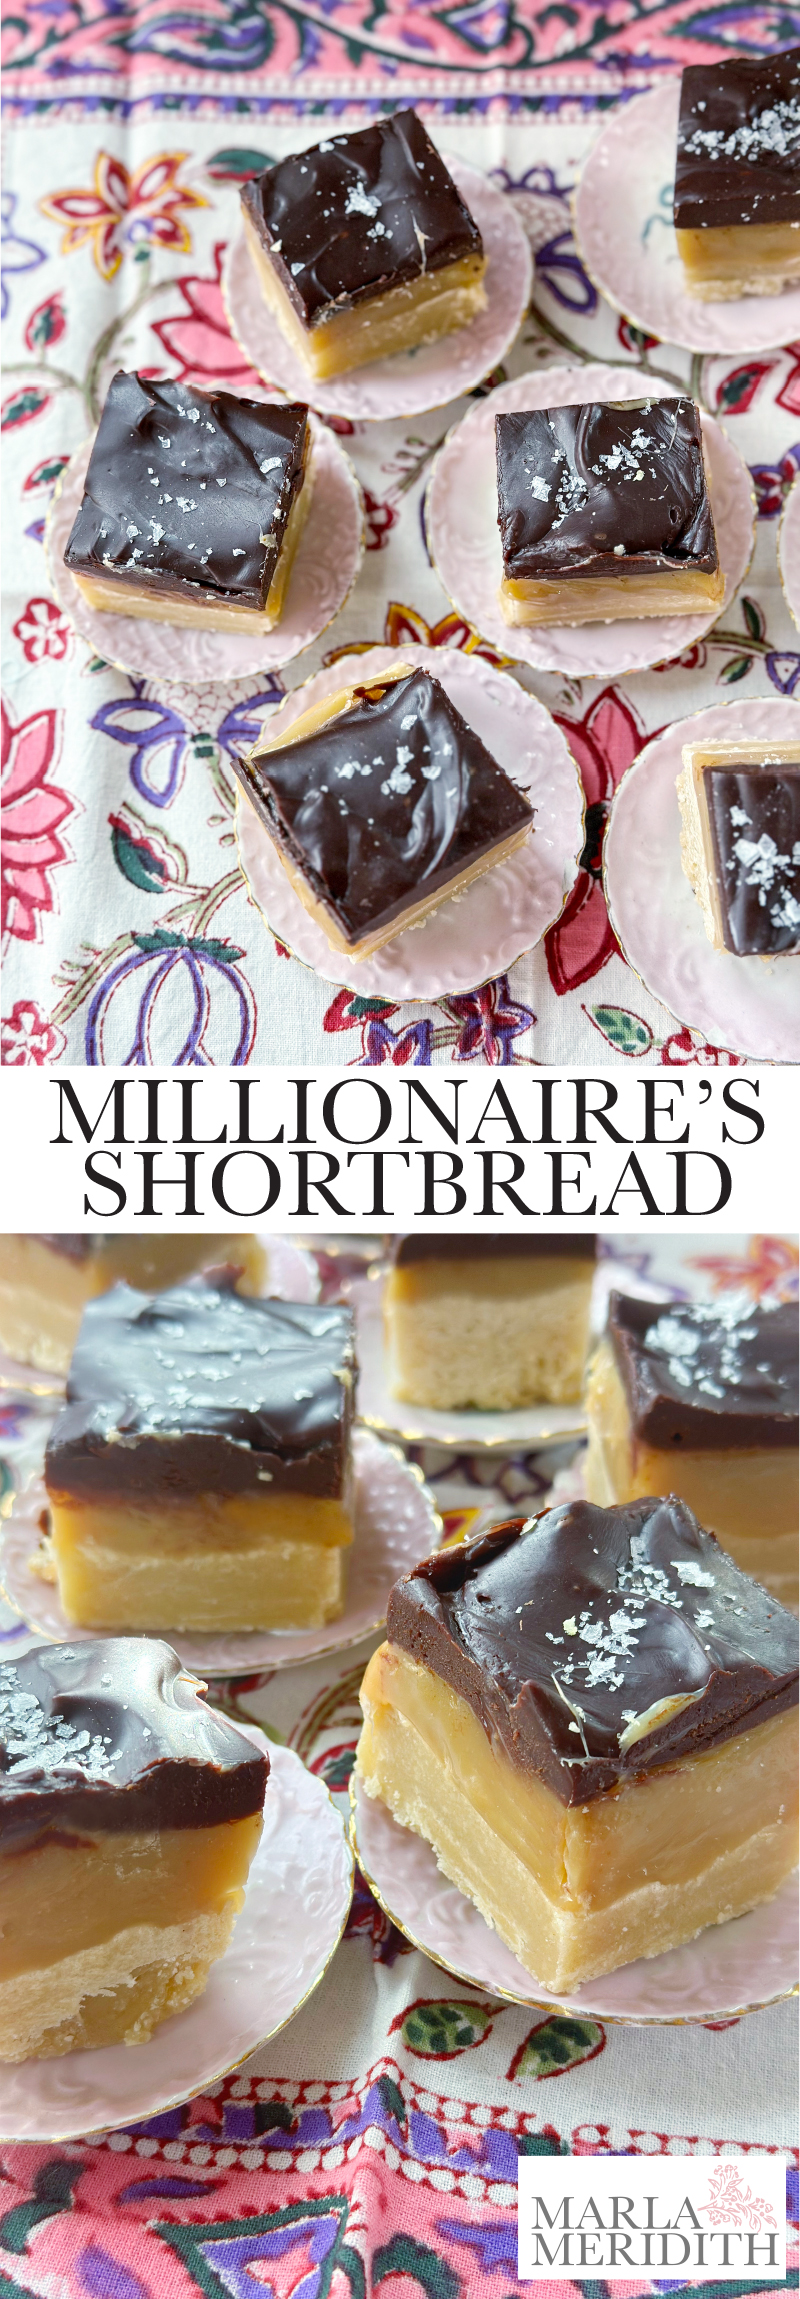 Millionaires Shortbread recipe by Marla Meridith